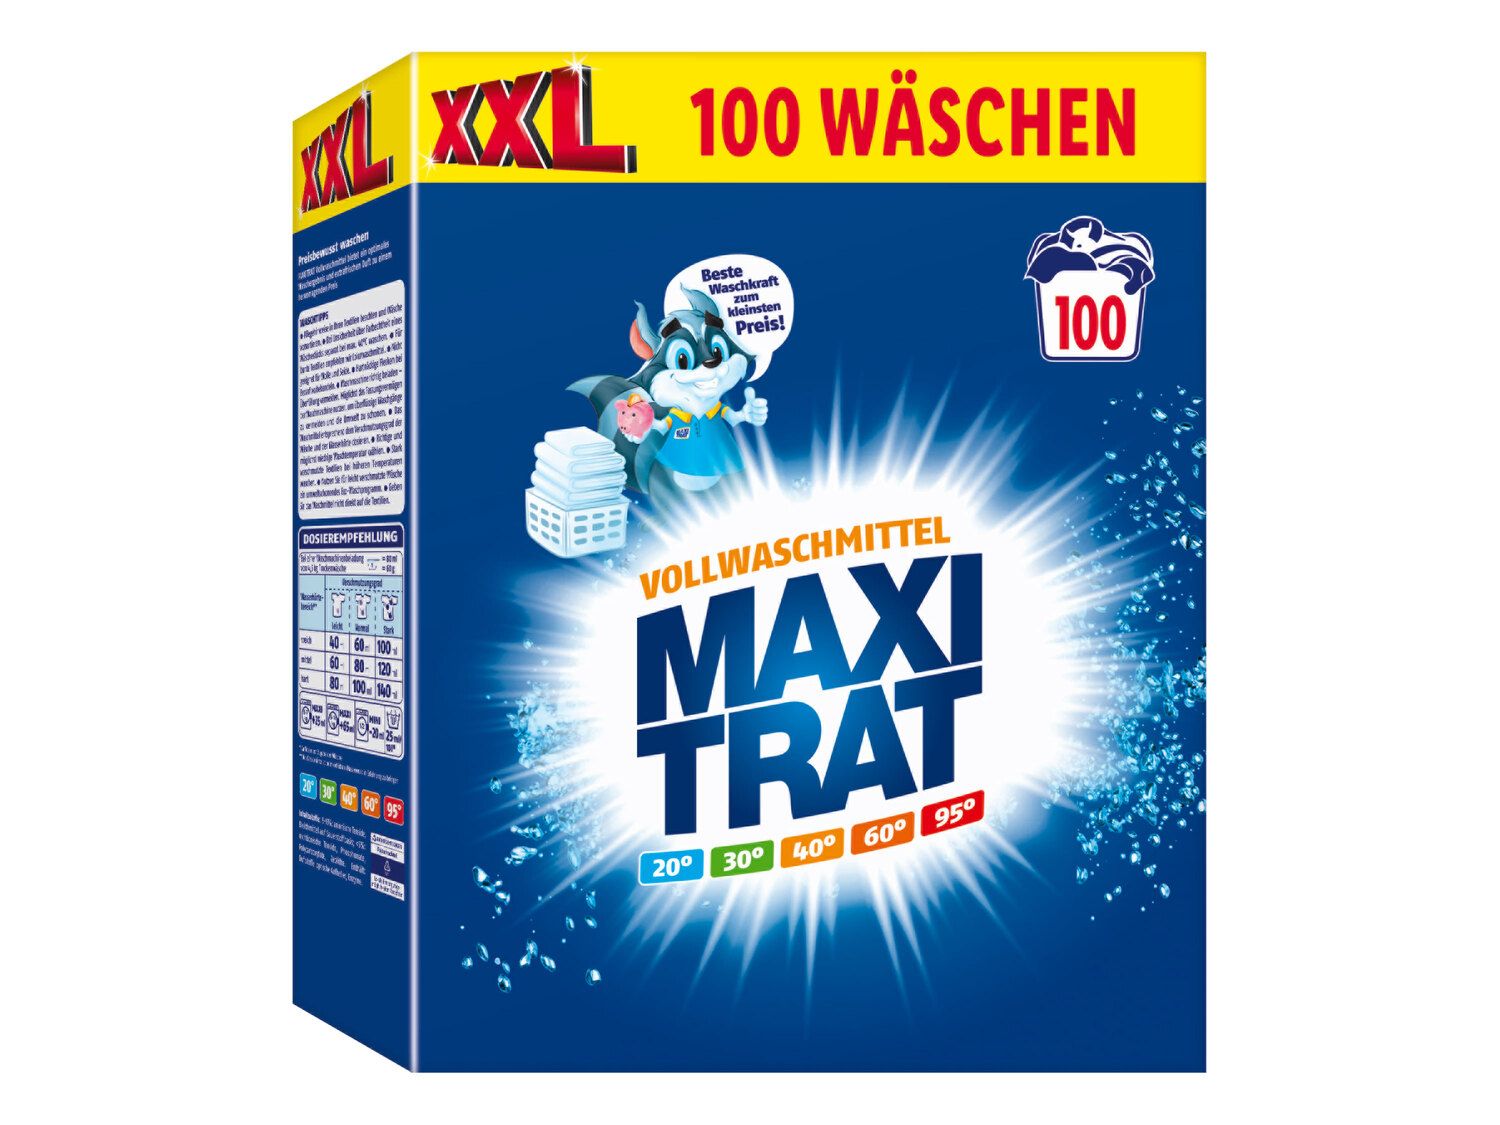 Maxitrat Vollwaschmittel Deutschland 100 Wäschen Lidl 